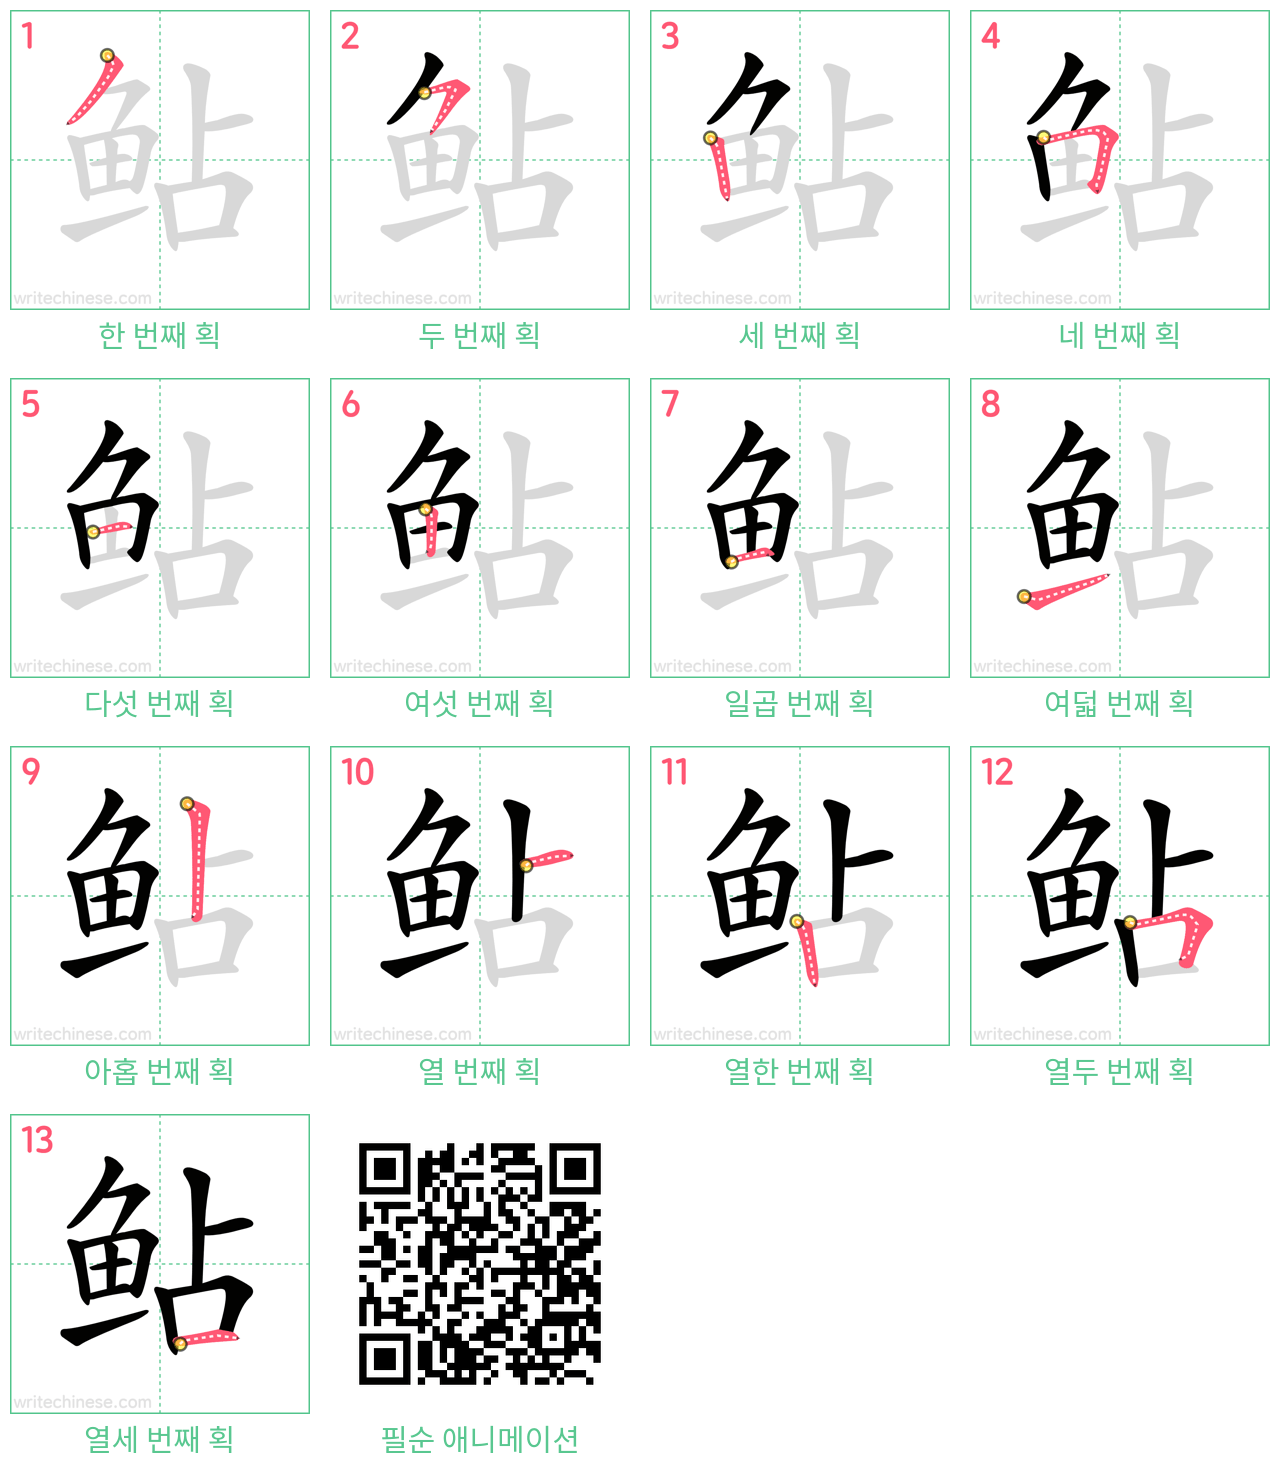 鲇 step-by-step stroke order diagrams